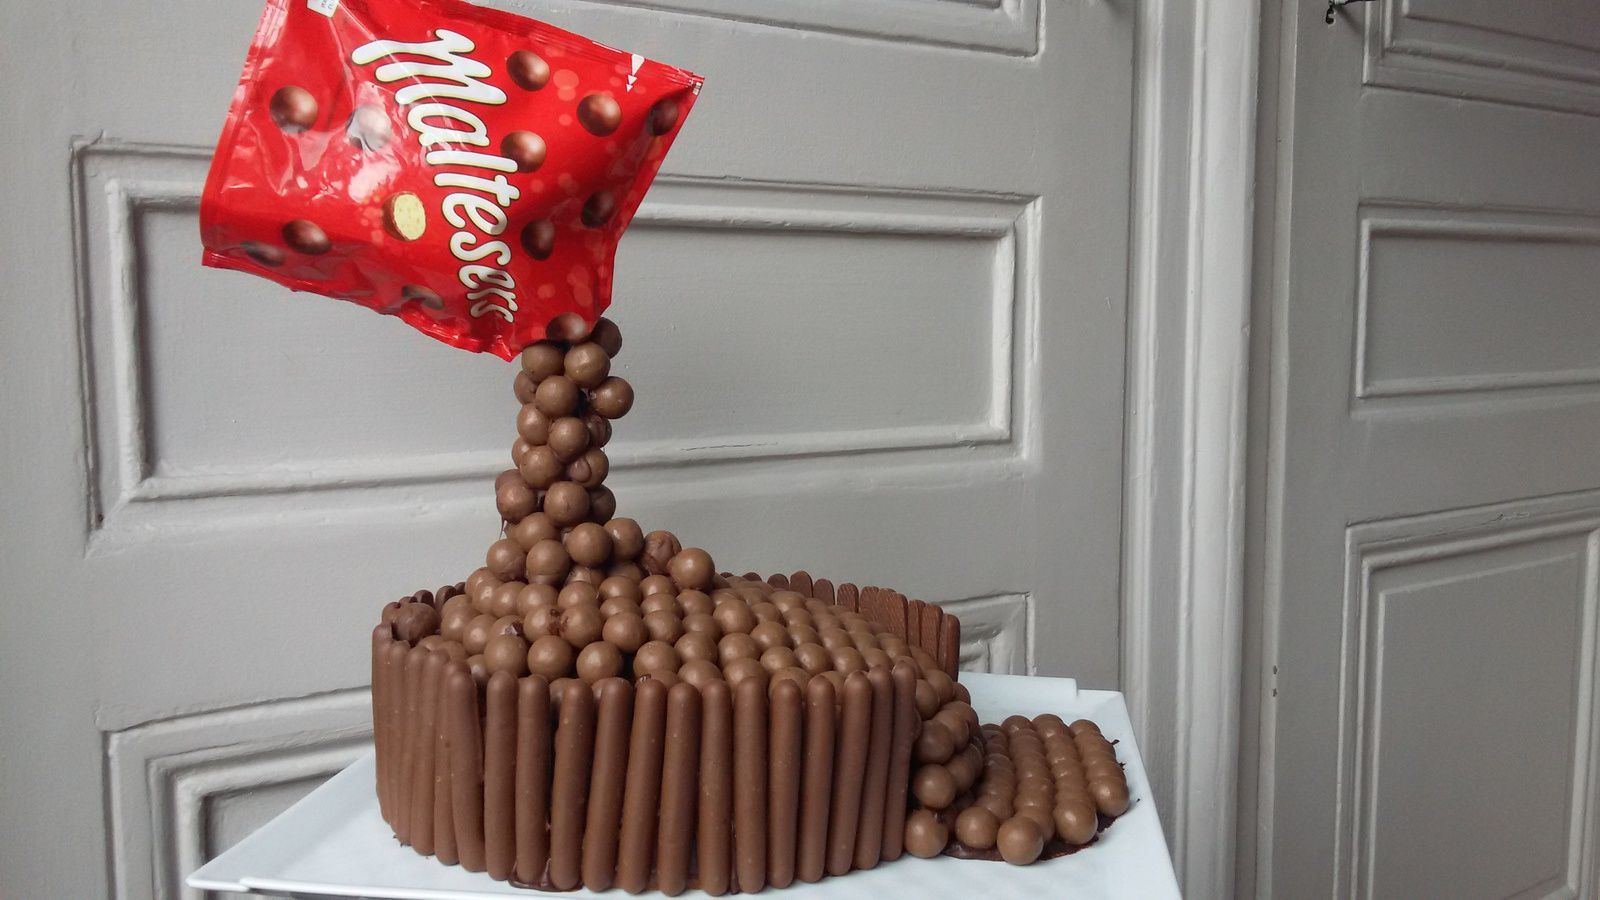 Gravity cake aux Maltesers ou gâteau suspendu - un peu de patience pour en mettre plein la vue!